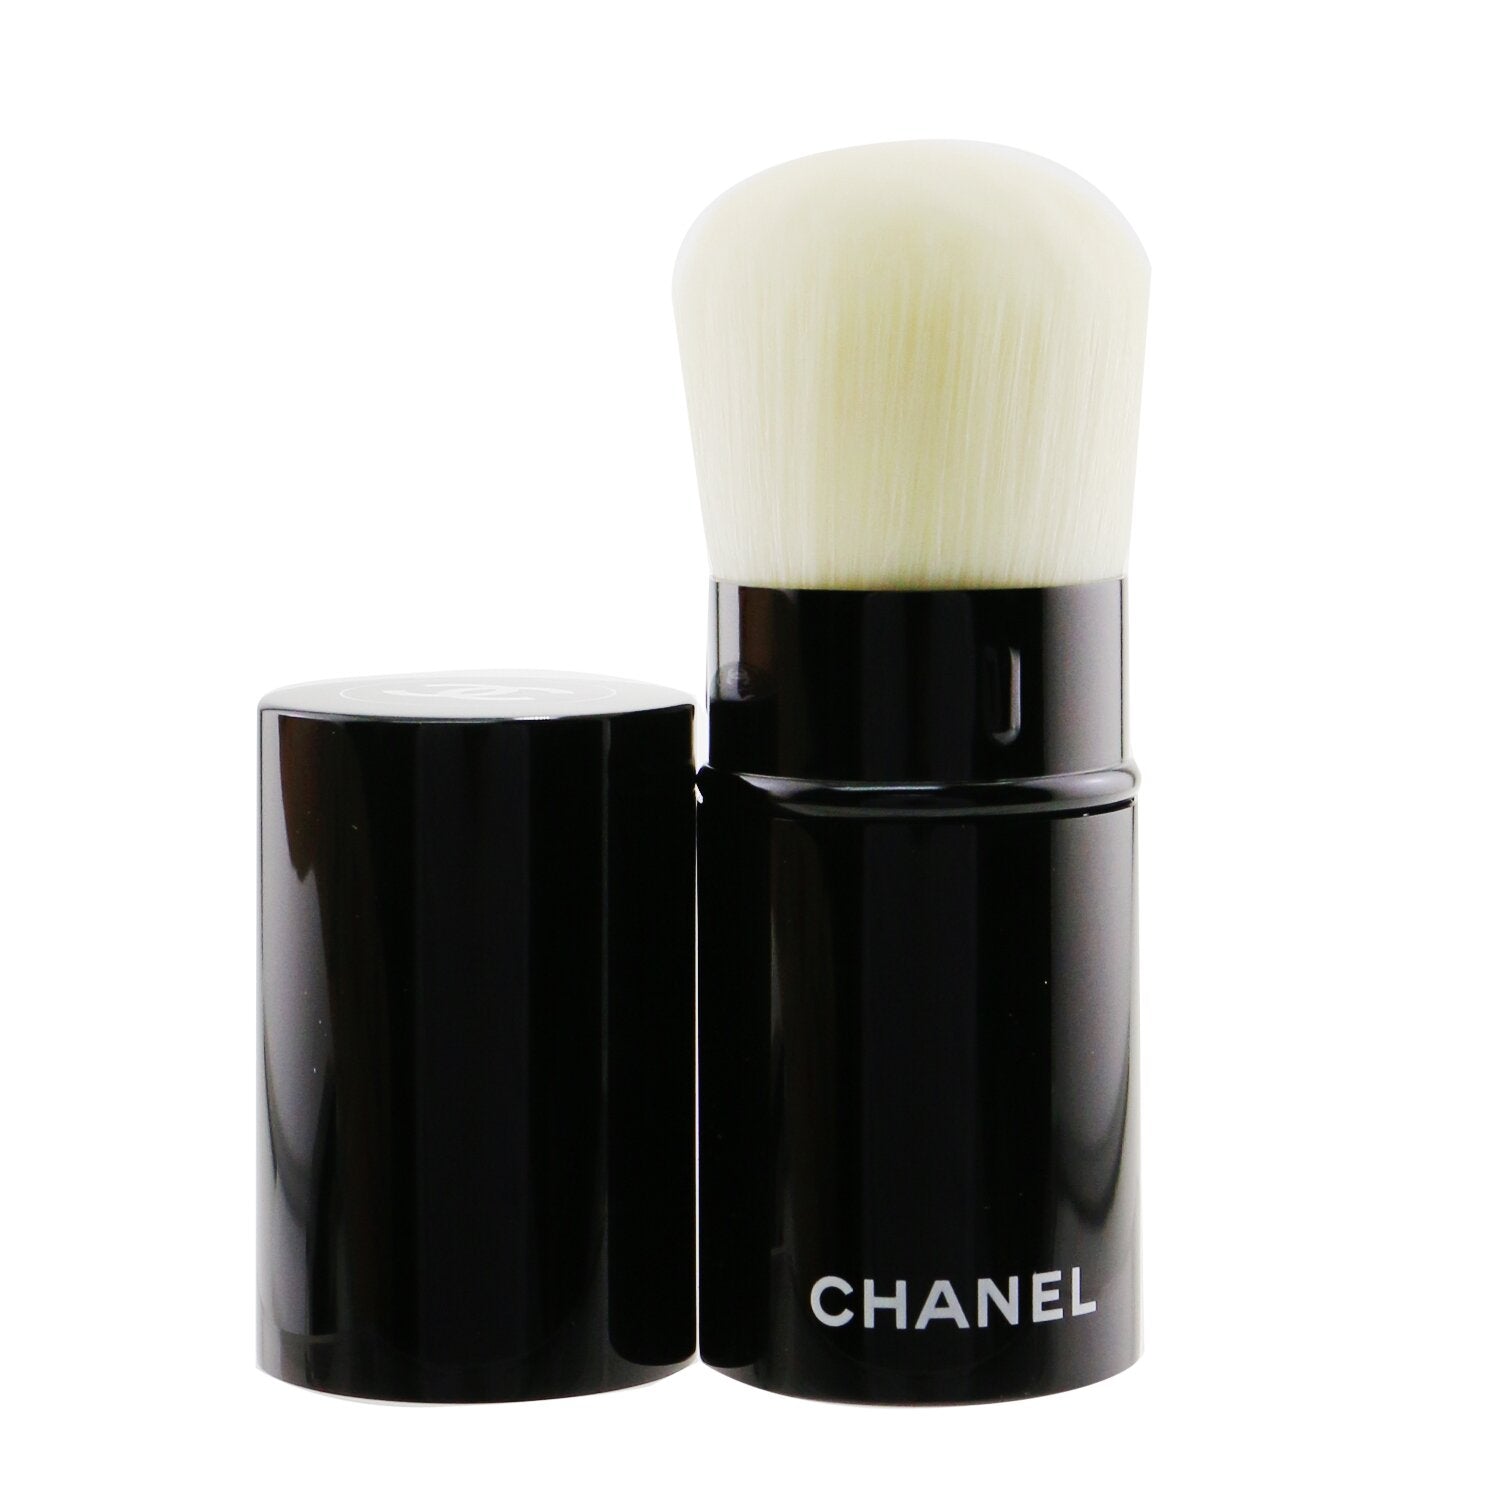 Les Pinceaux de Chanel - Retractable Foundation Brush